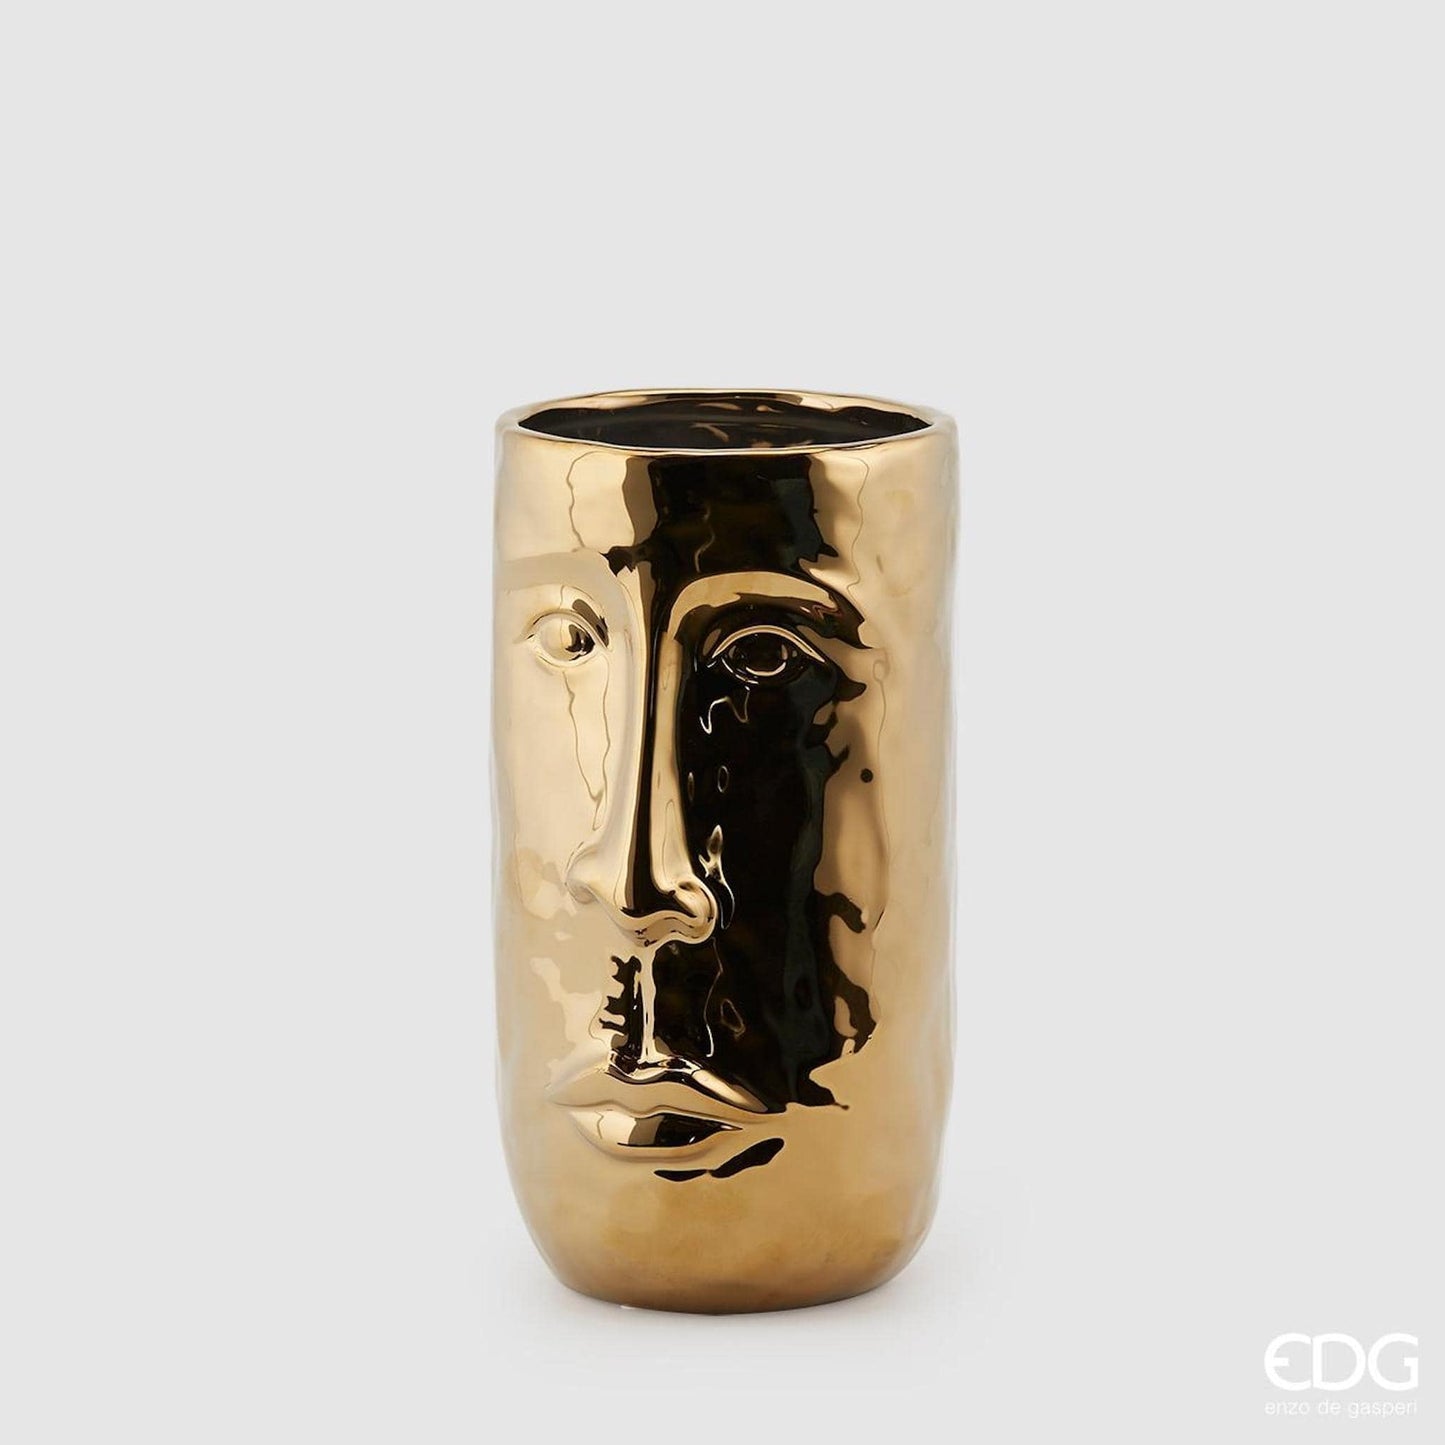 Italiving Keramikvase Raumdekoration Blumenvase gold mit Gesicht - Keramik H 26 cm Ø 15 cm